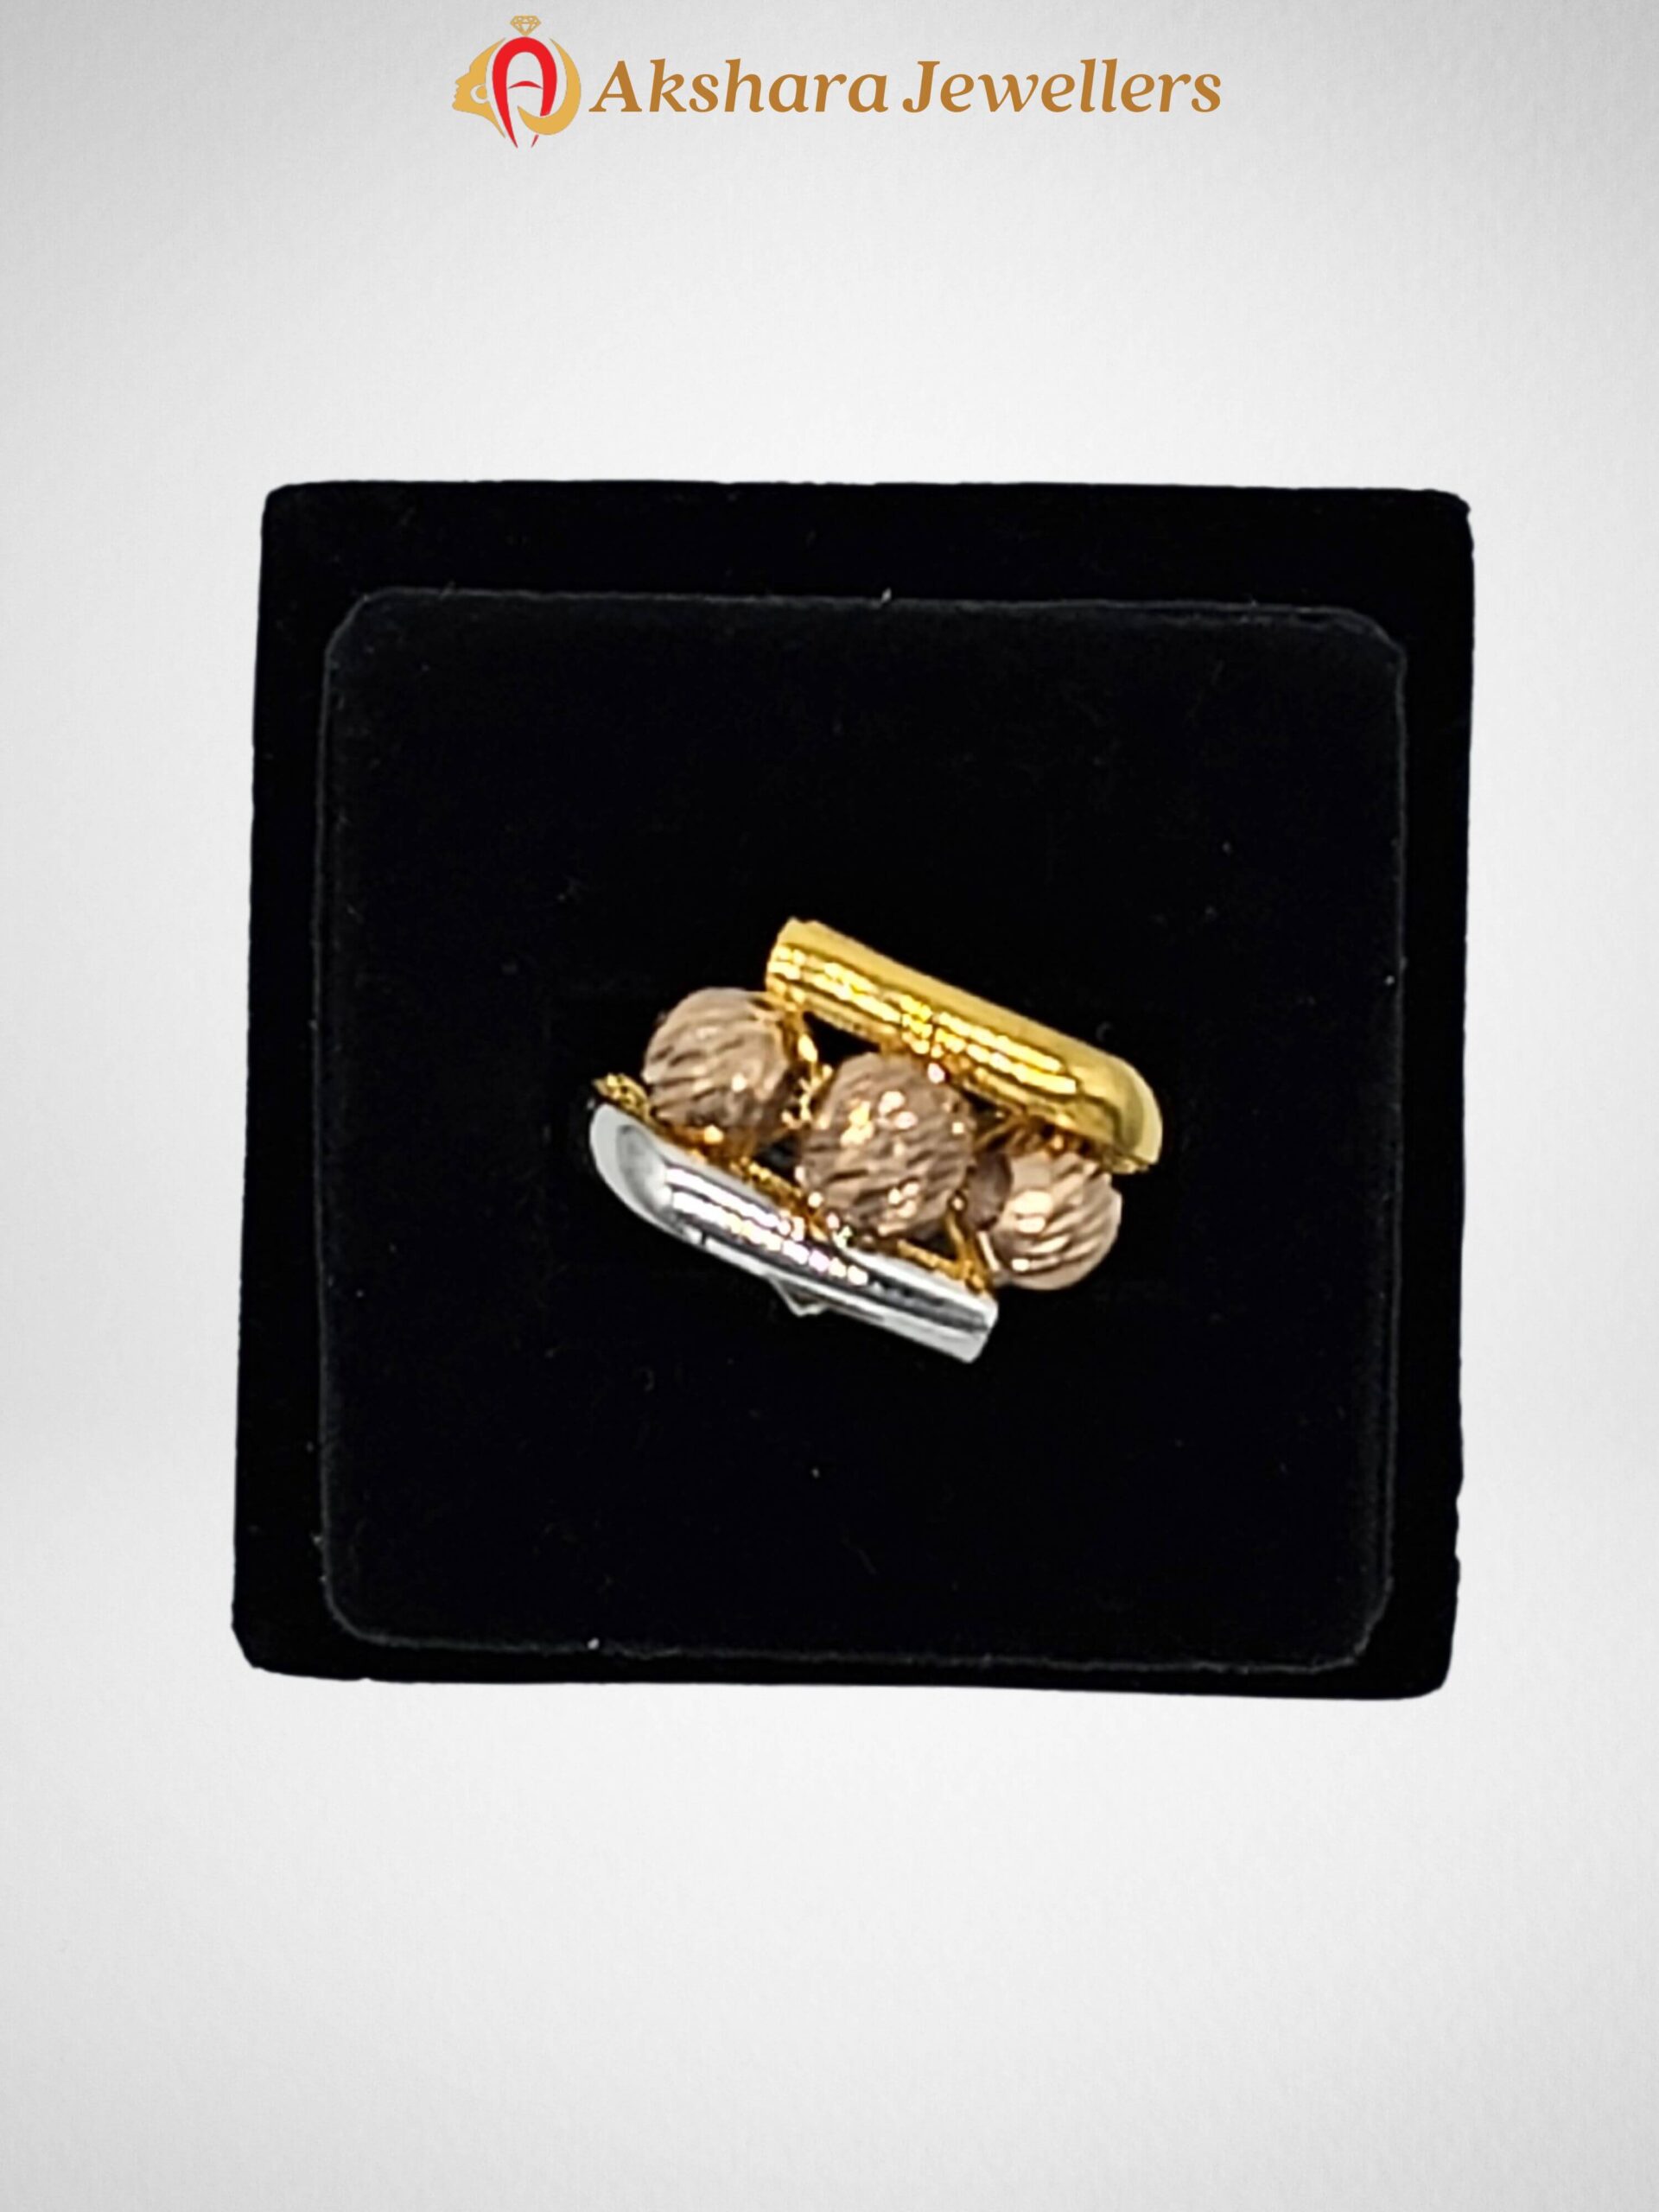 Akshara Jewellers Rings, Rings Gold design, Akshara Jewellers, Sydney Akshara Jewellers